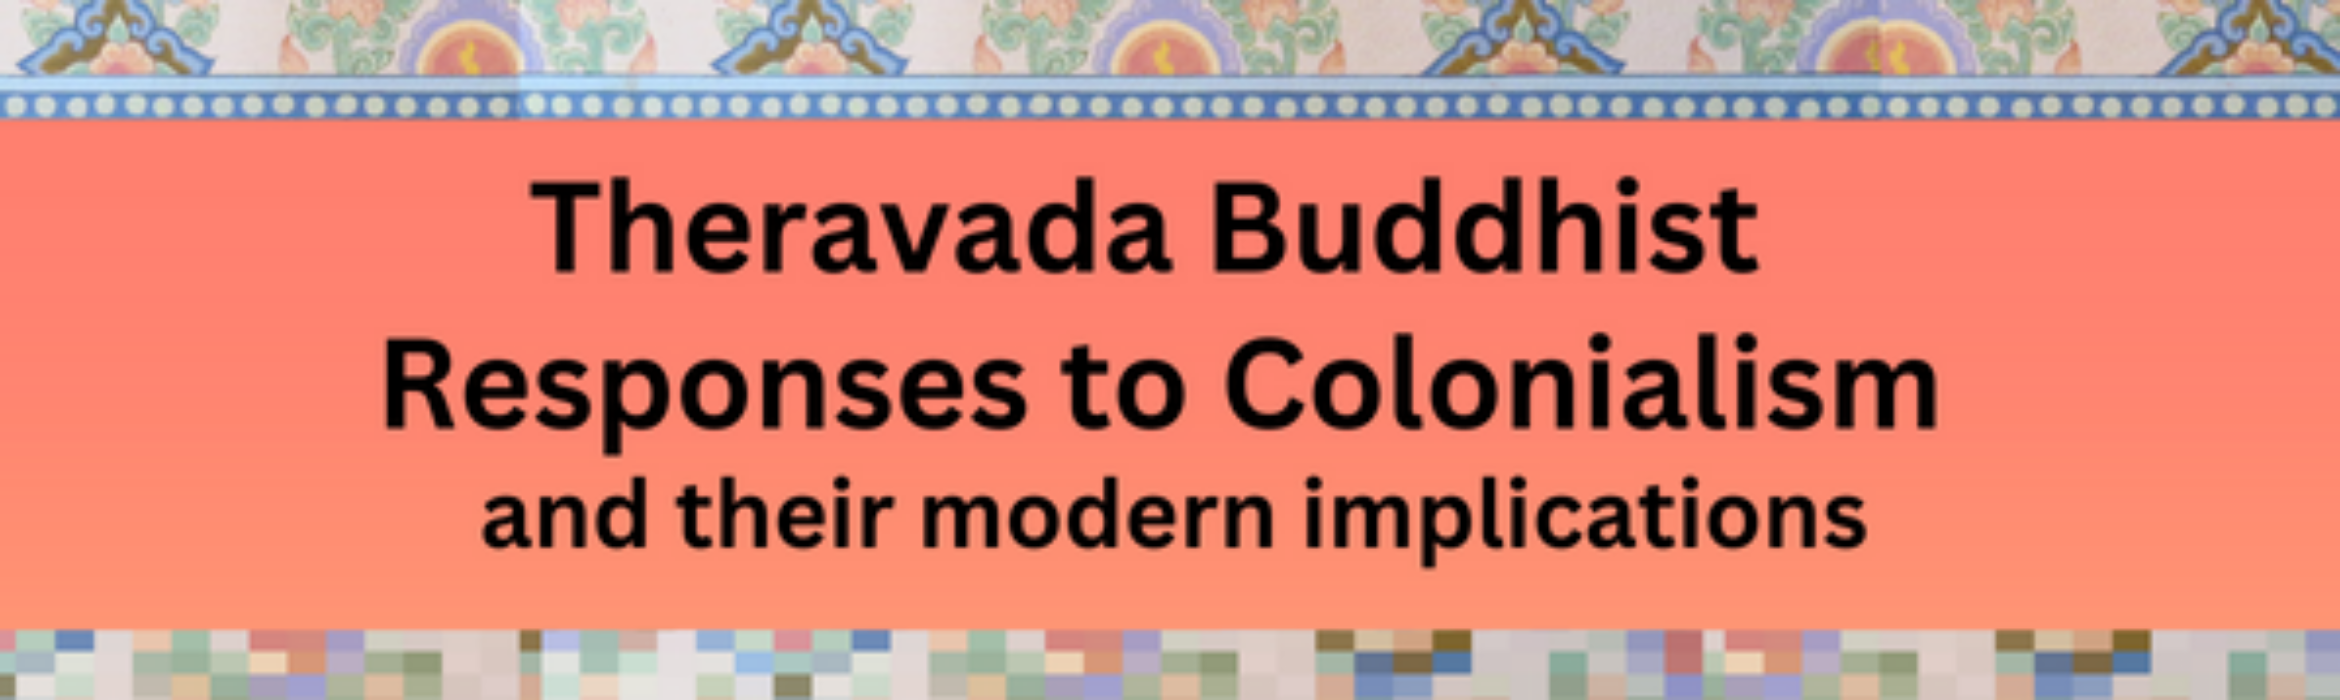 上座部佛教對殖民主義的回應及其現代意義